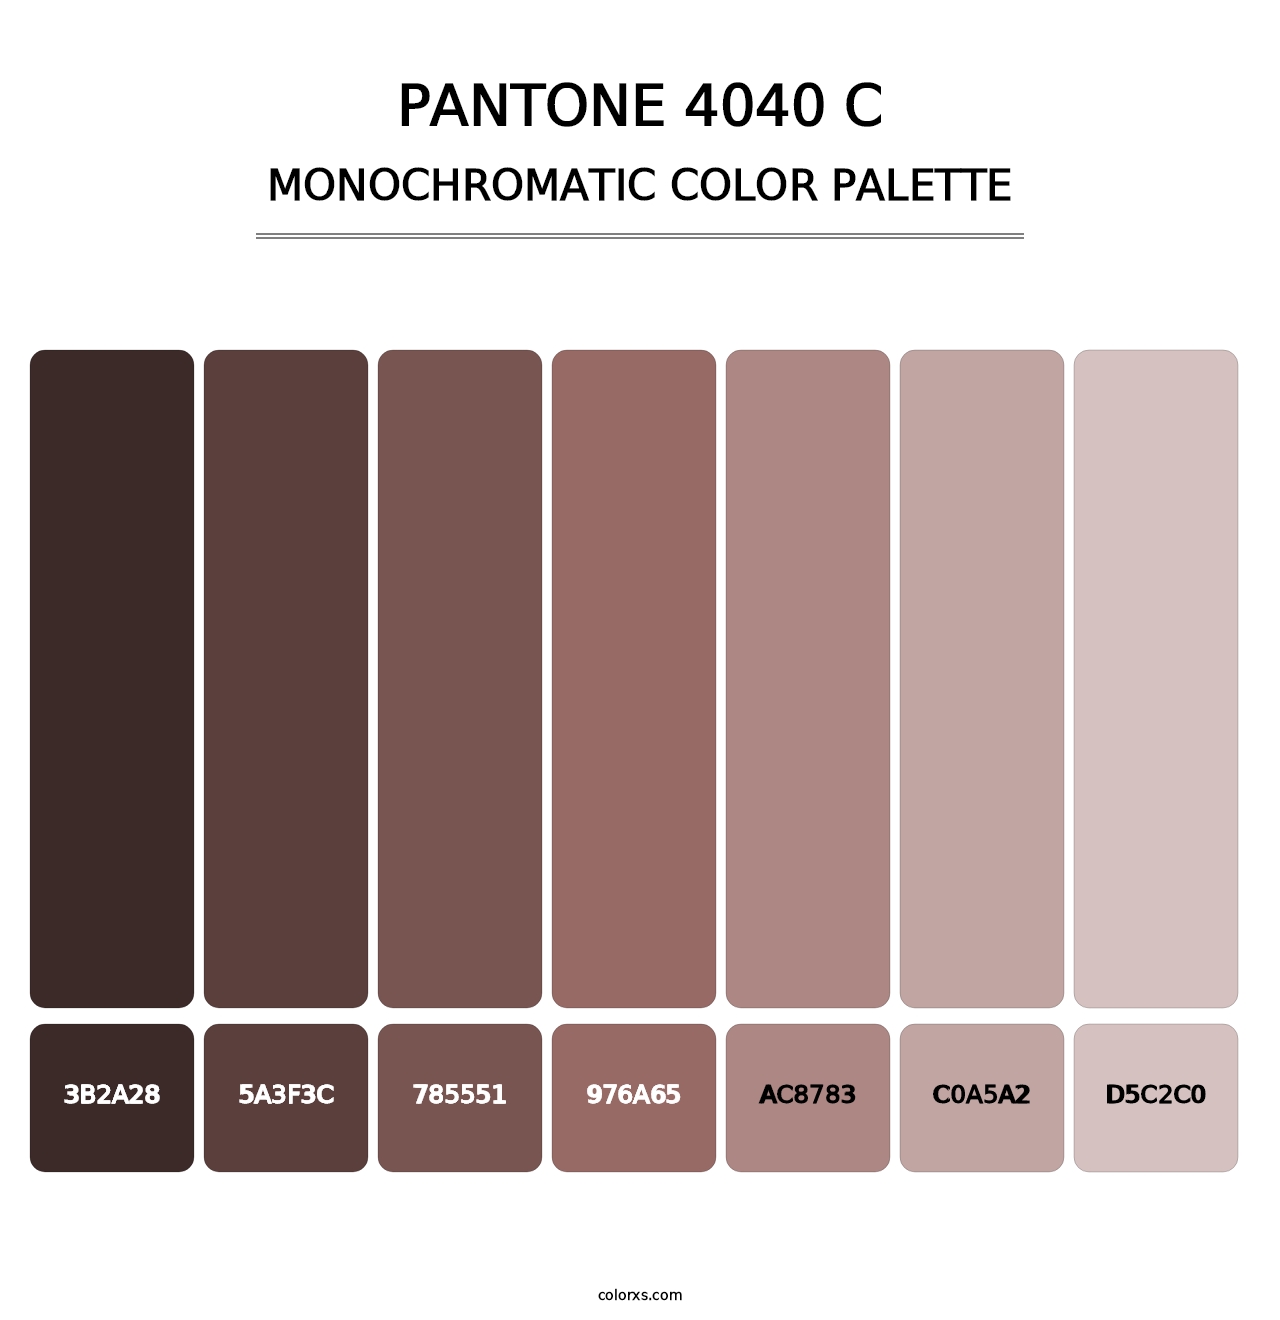 PANTONE 4040 C - Monochromatic Color Palette